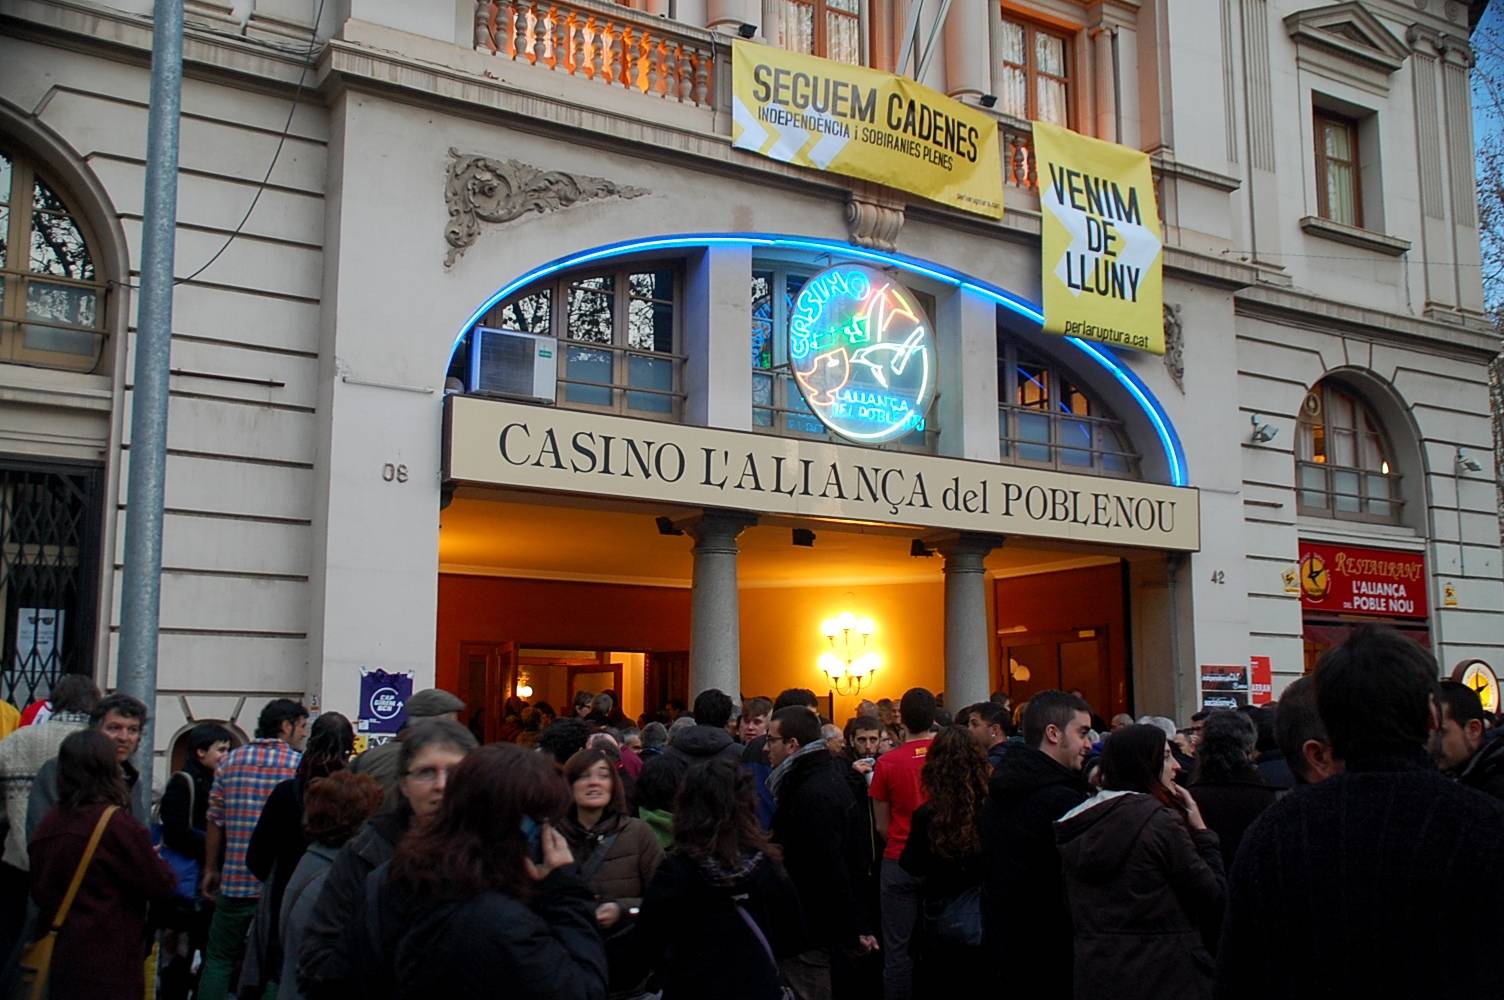 "Per la ruptura" Casino de l'Aliança del Poblenou